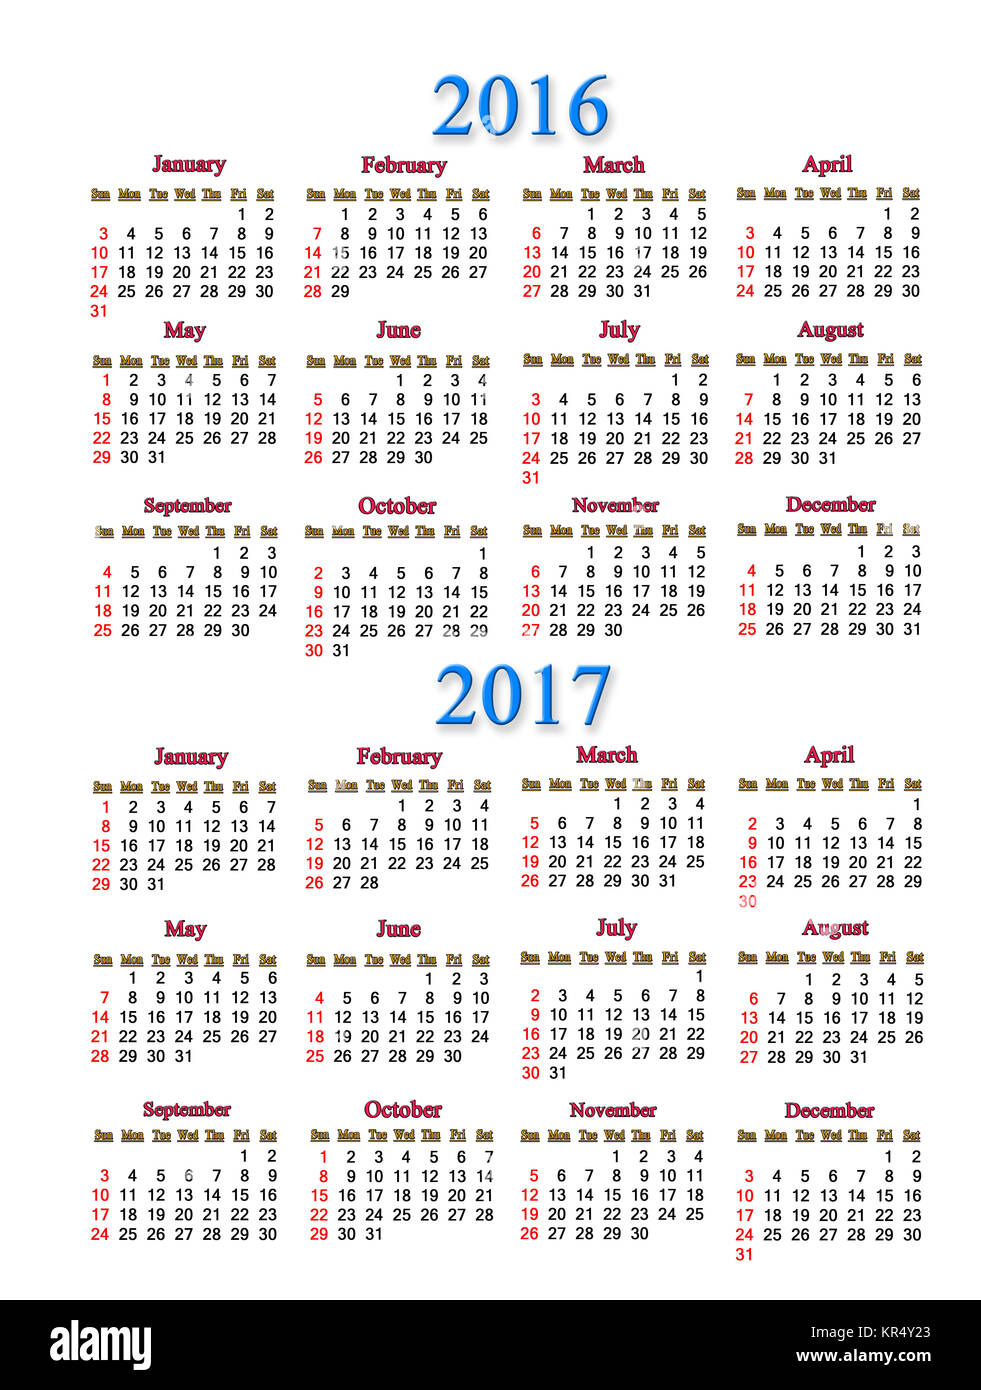 2016-2017 Boot Calendar: Updated 05/04/16